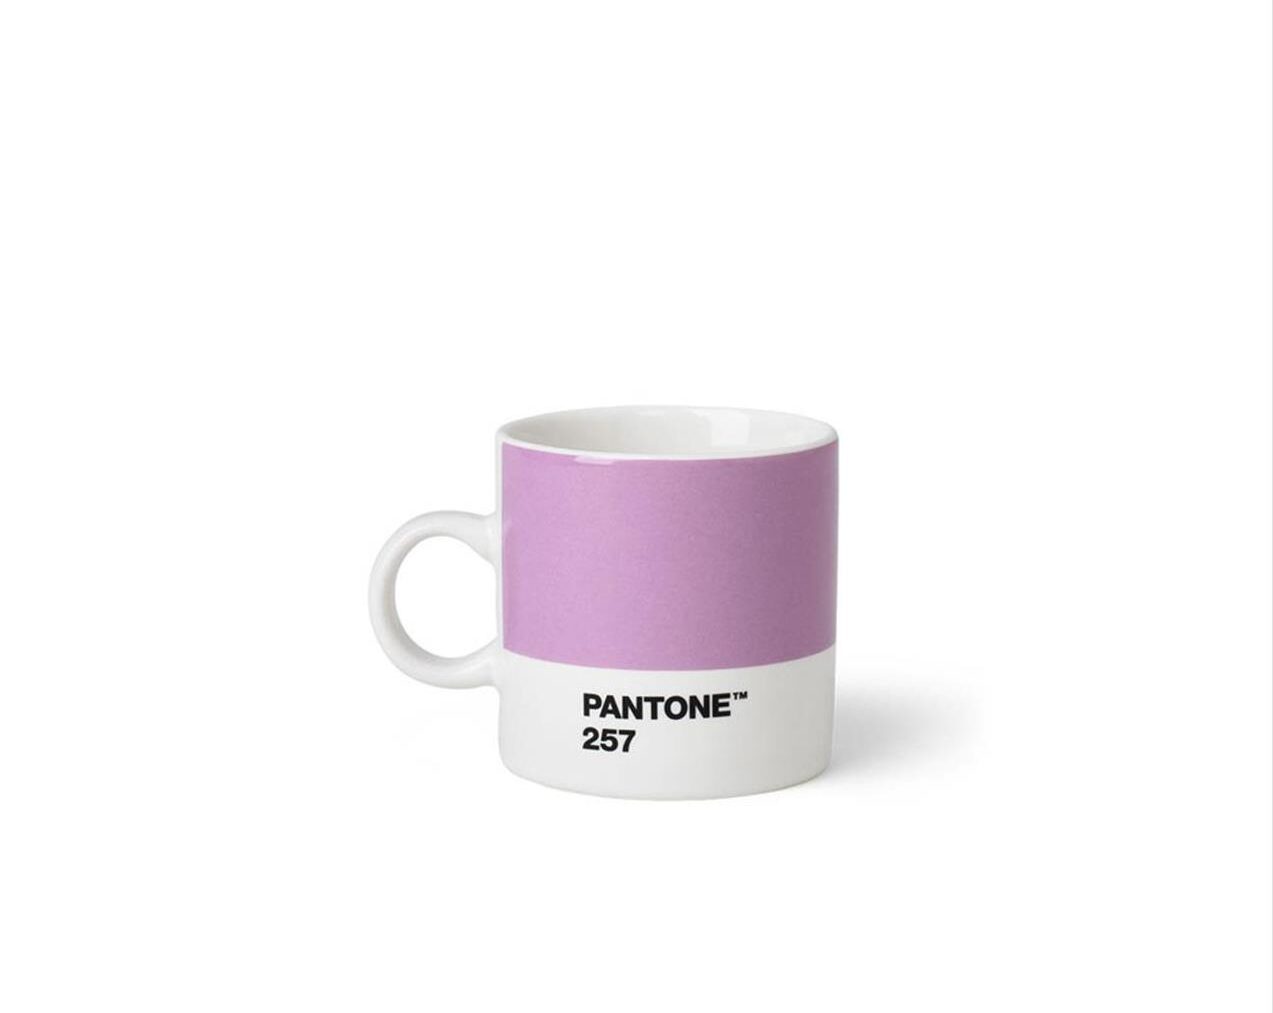 Pantone-Espresso-Cup-Light-Purple